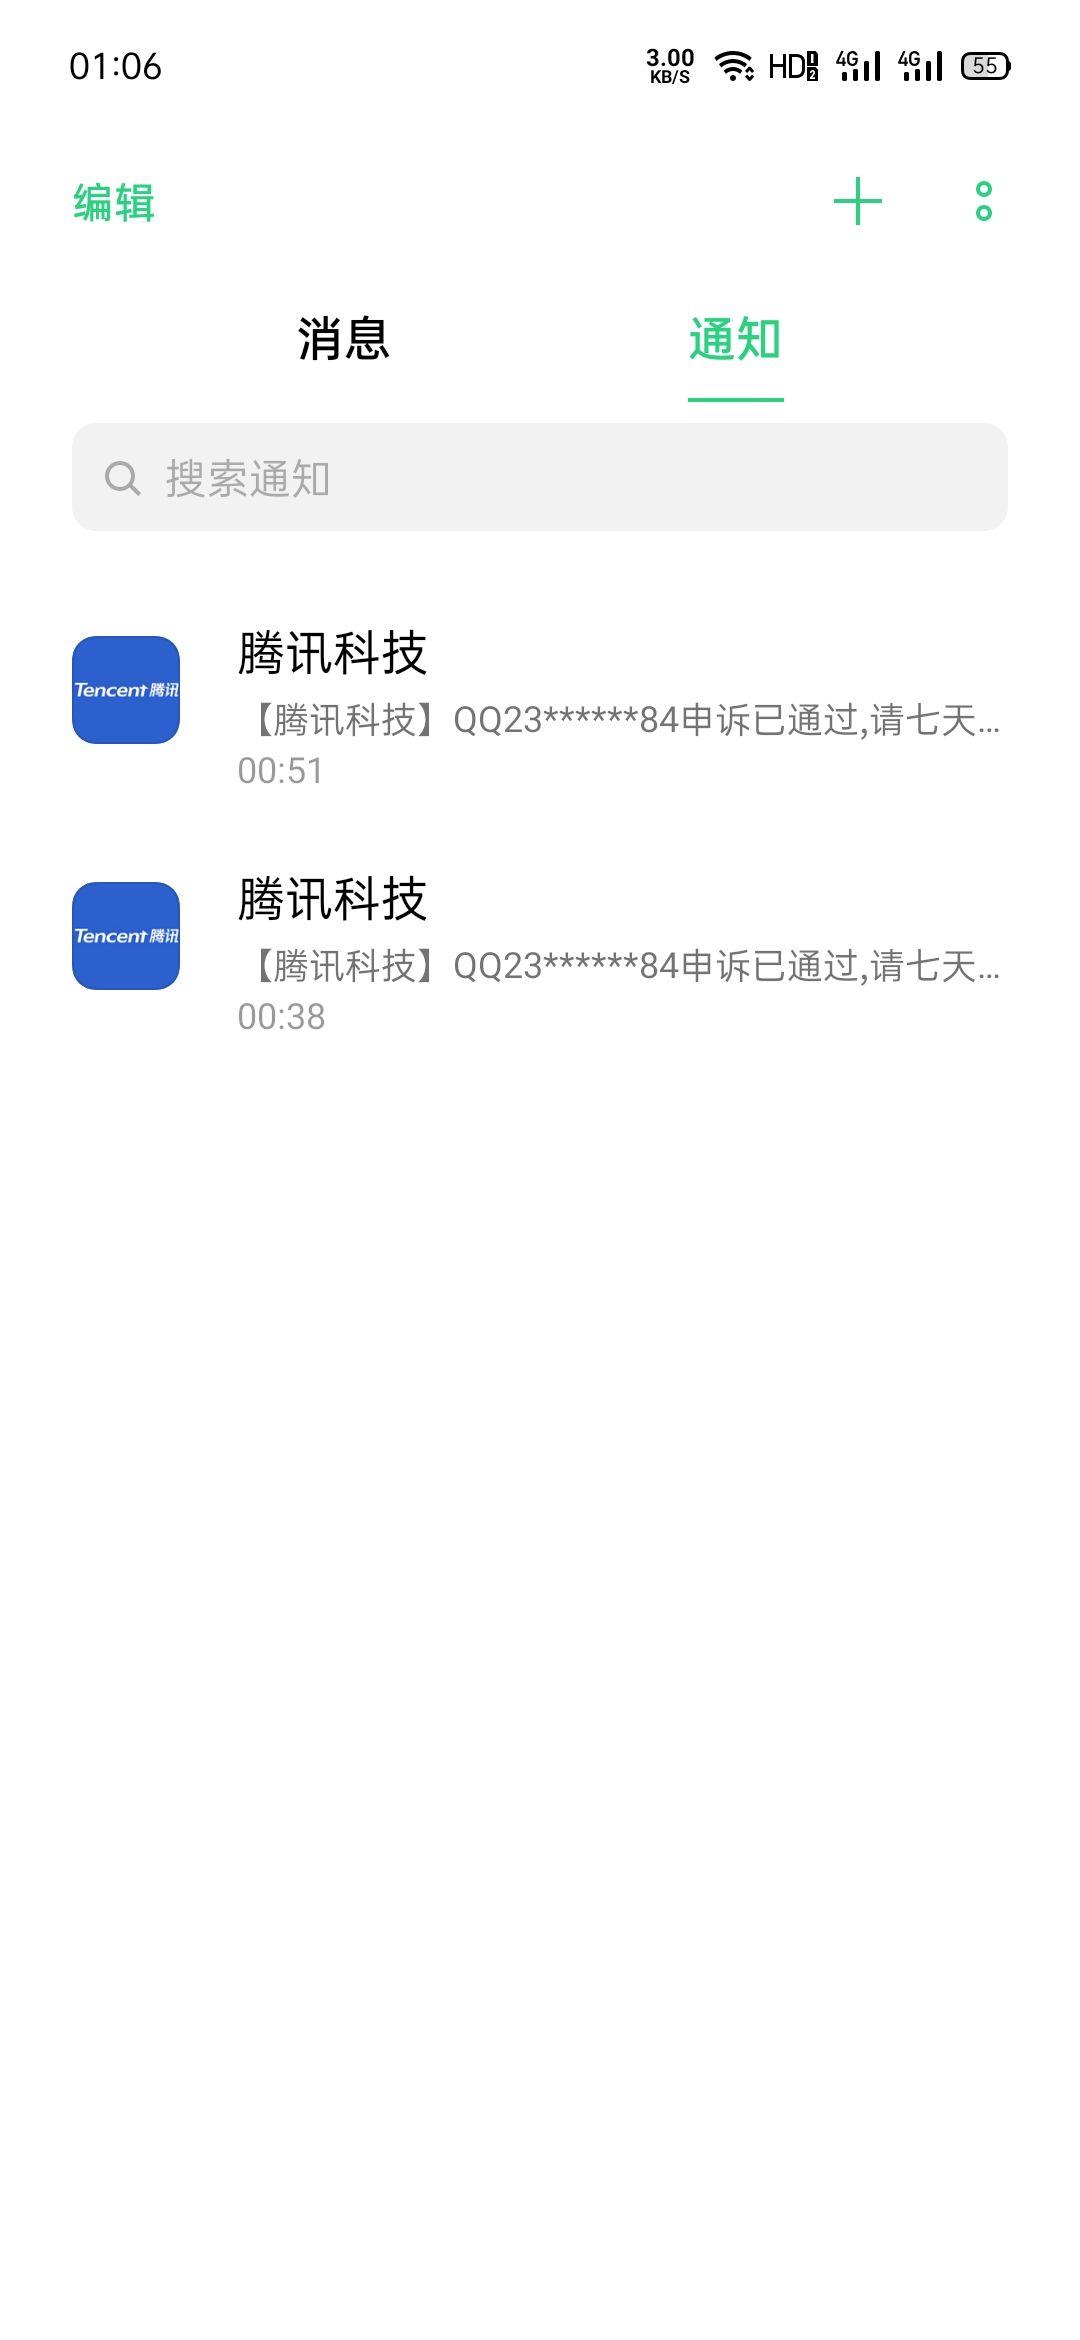 十分钟内，我的手机连续收到腾讯科技发给我的两条短信，说我QQ成功上诉是怎么回事？